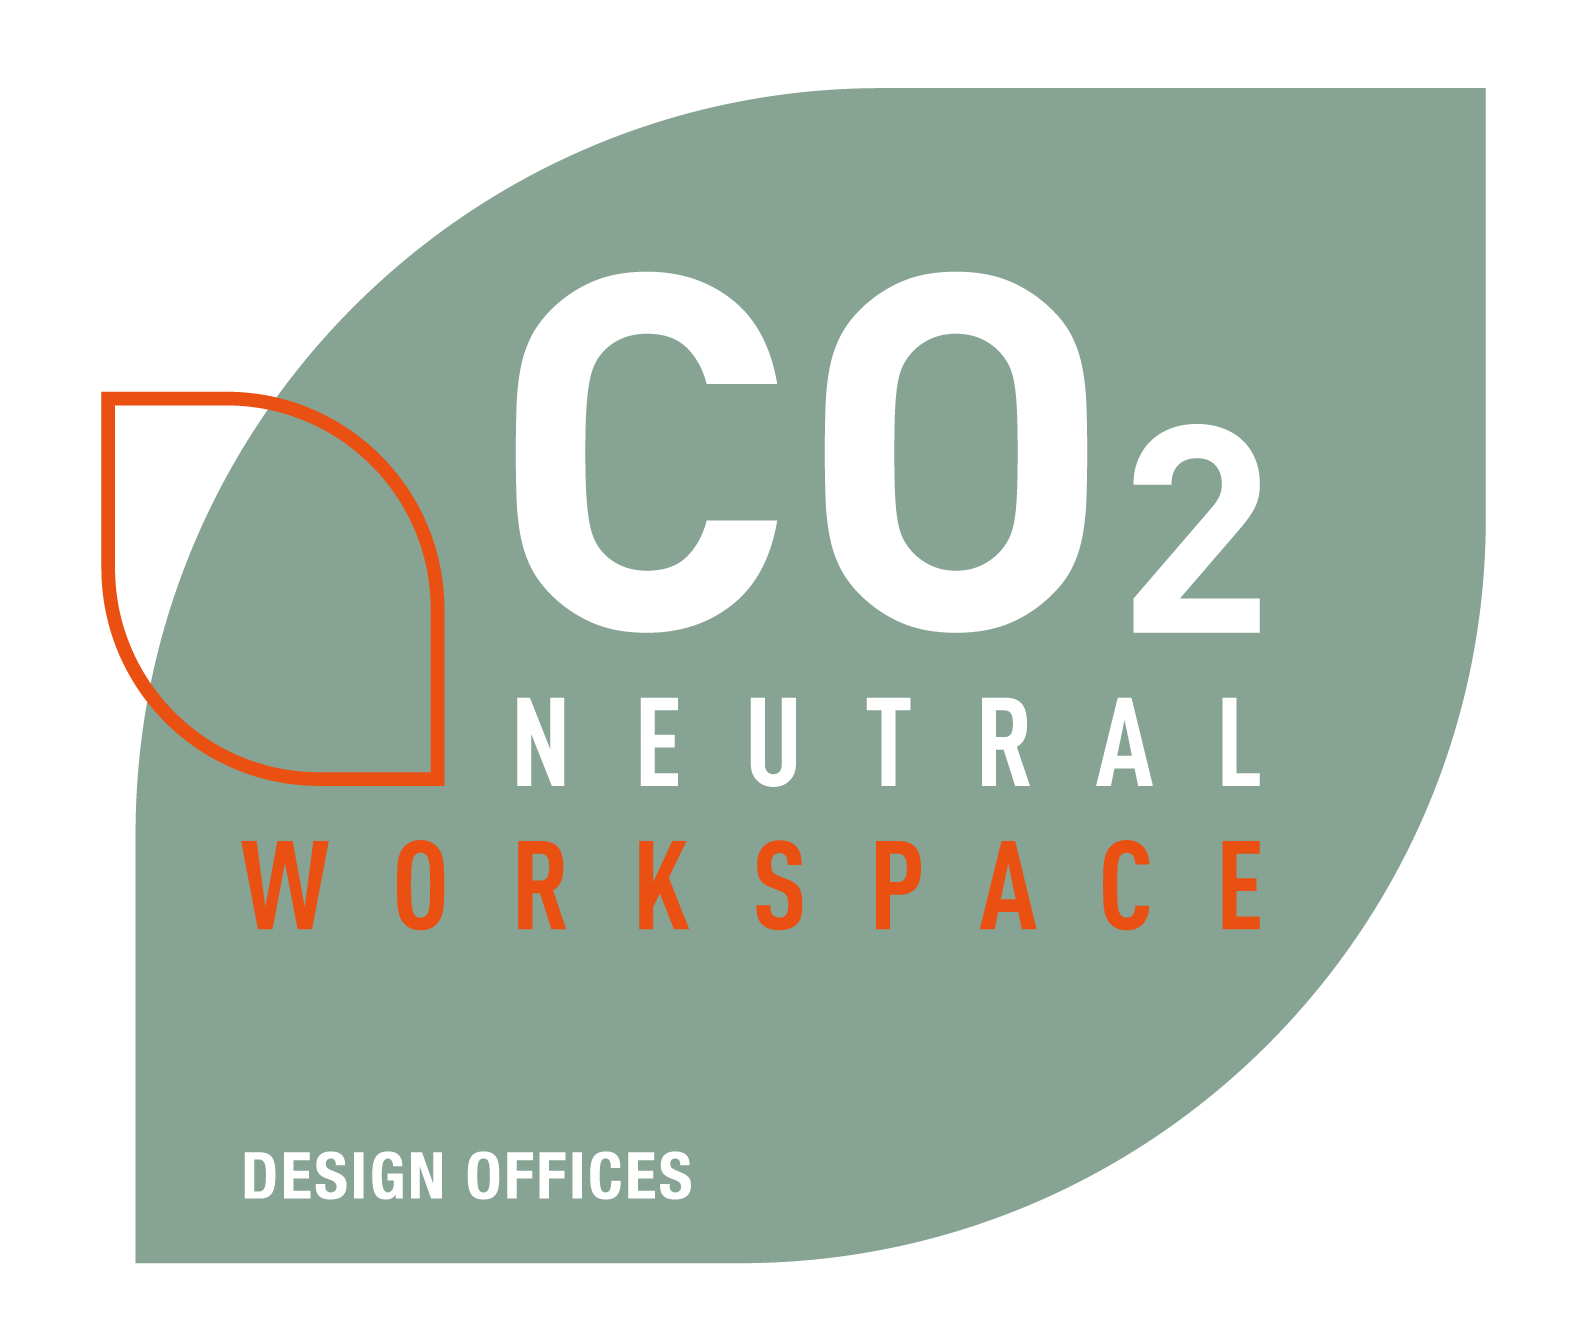 Nachhaltigkeits-Badge Design Offices